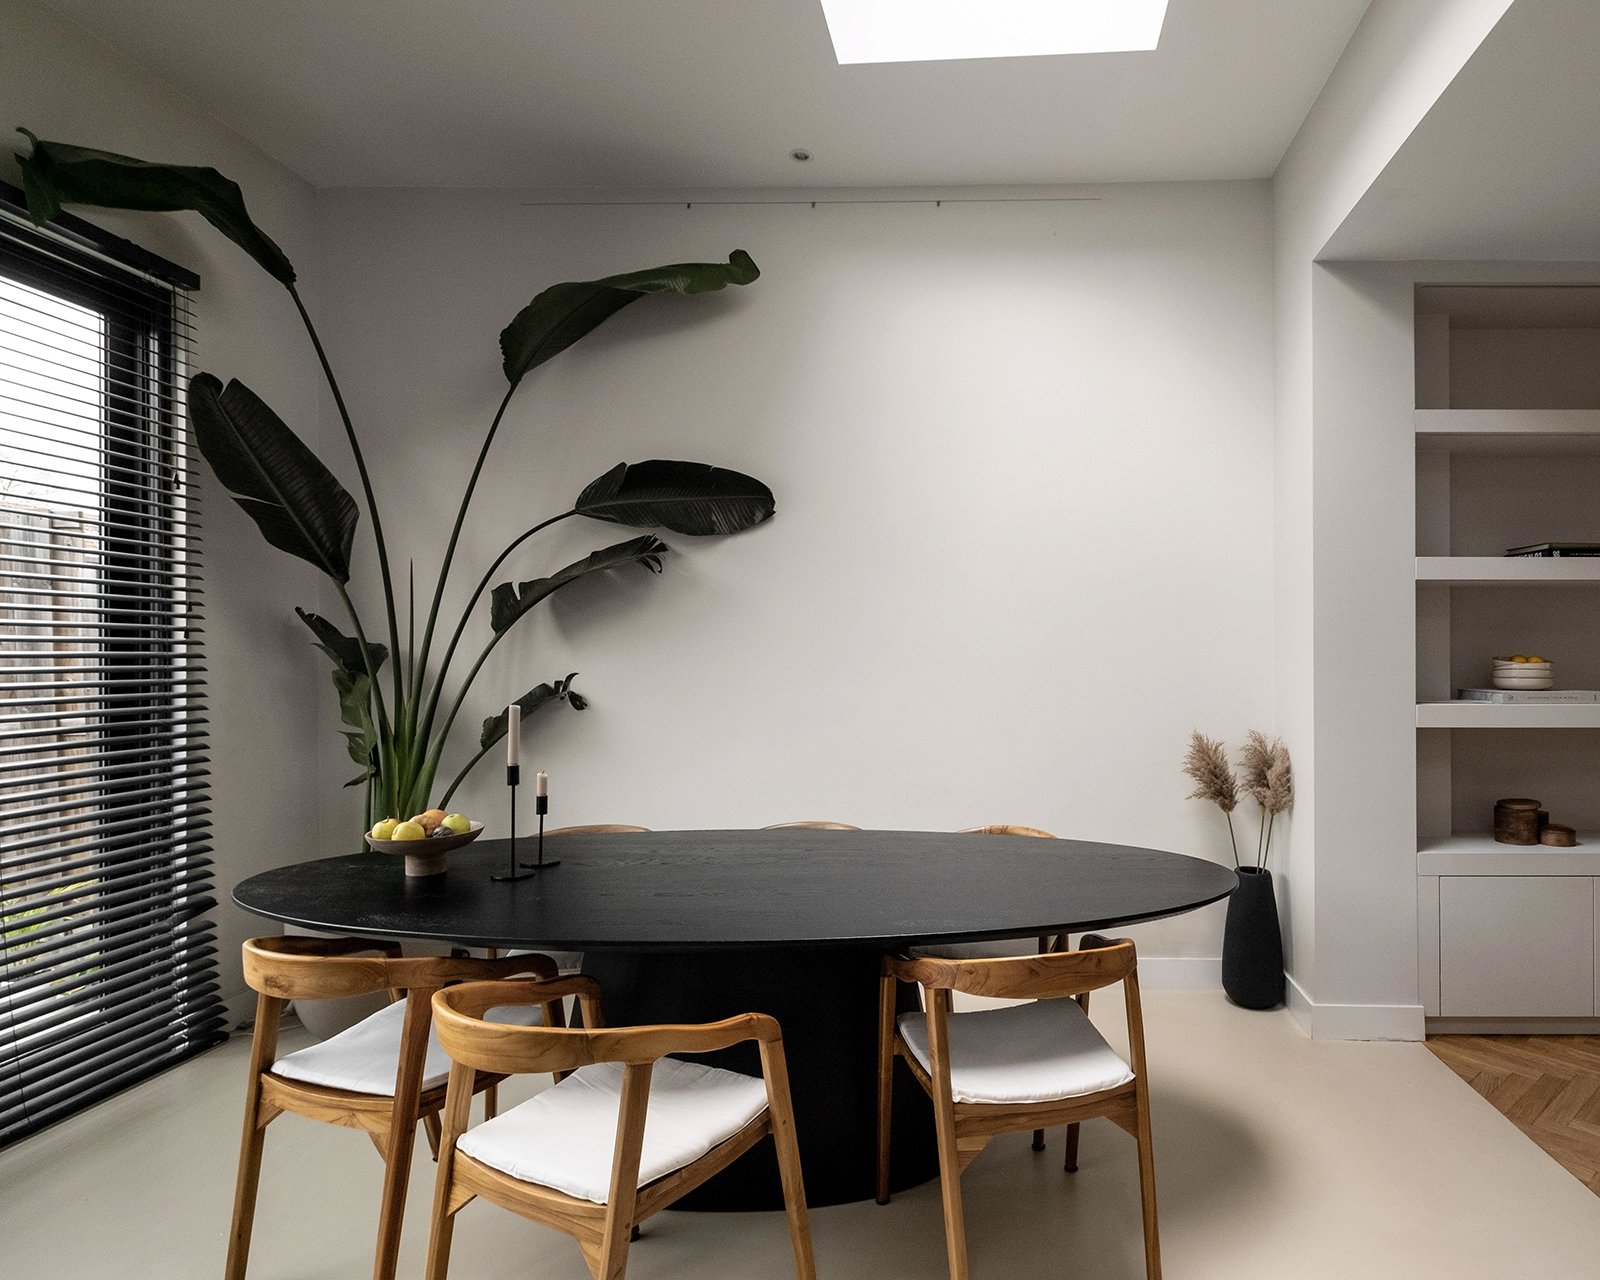 Ovale eettafel eikenhout met onderstel Eqone in sfeervolle woonkamer | Table du Sud